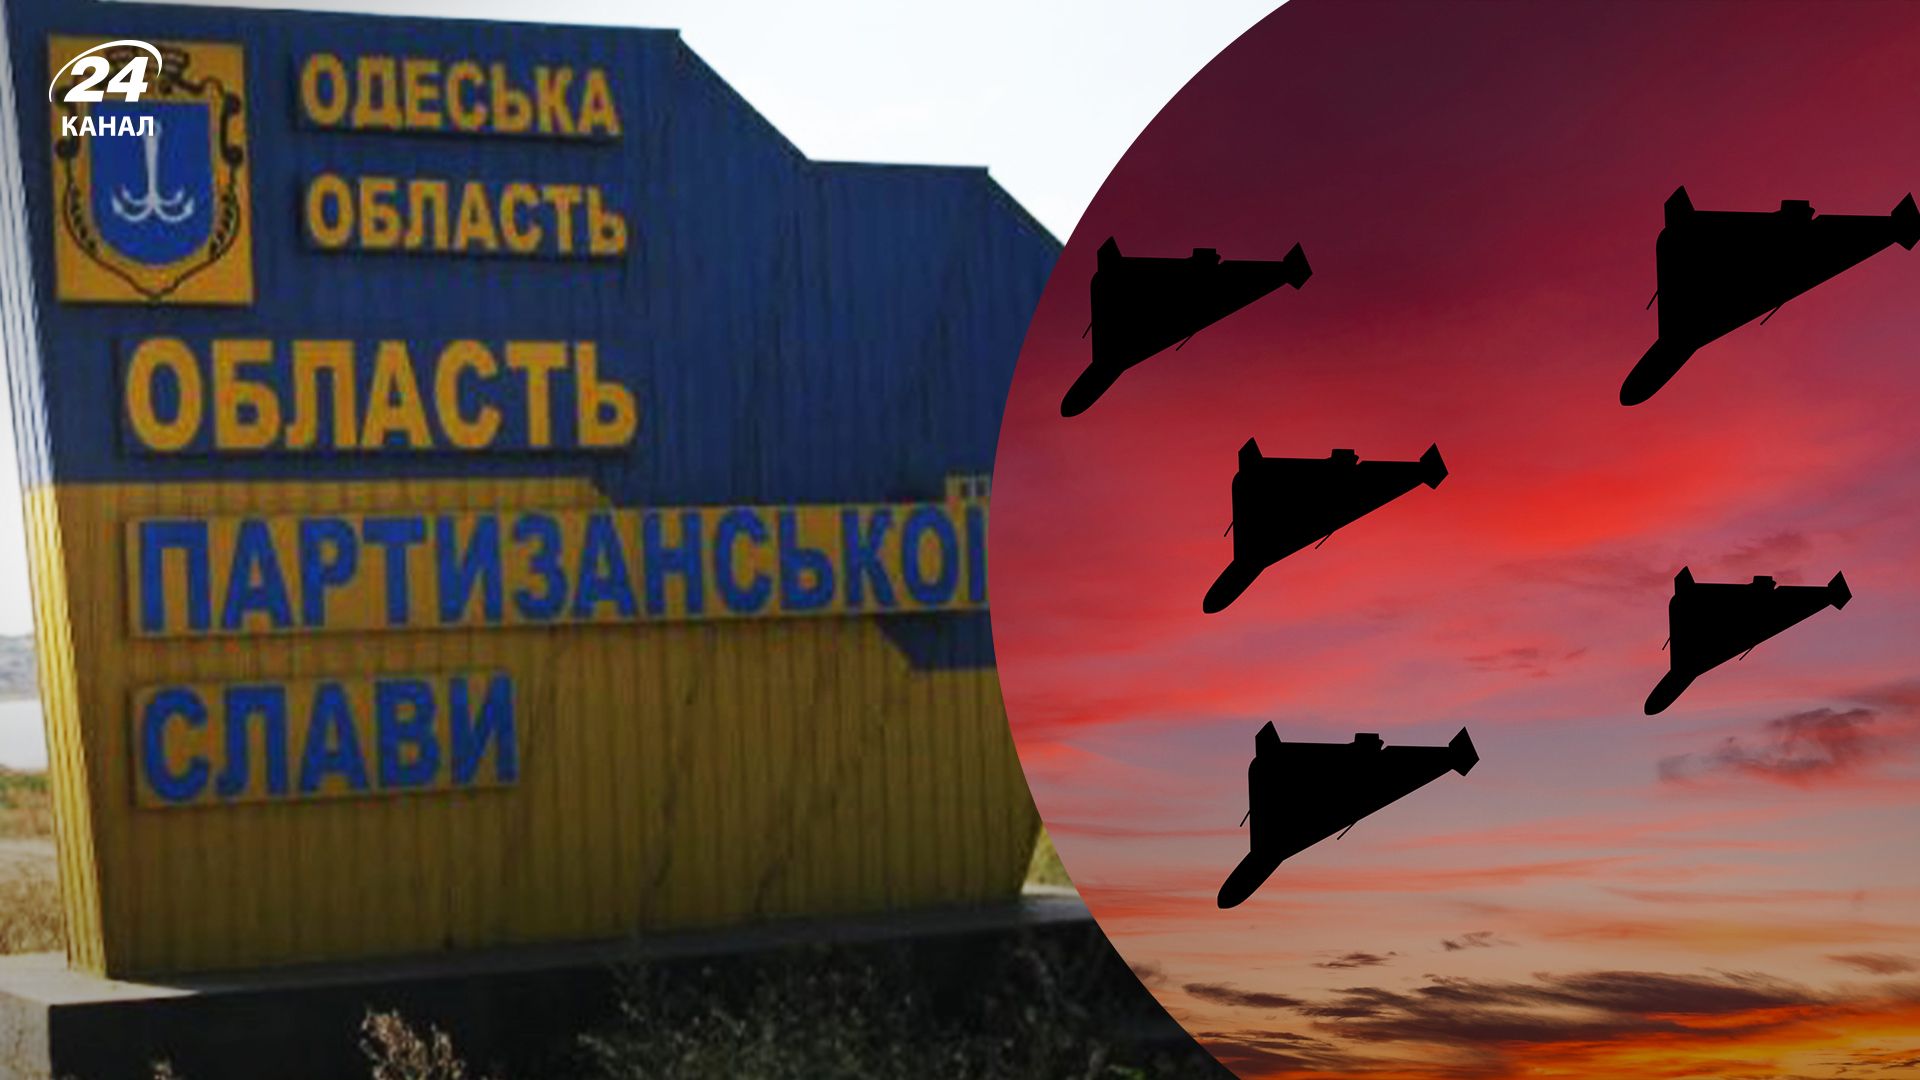 Одесскую область массированно атаковали дроны